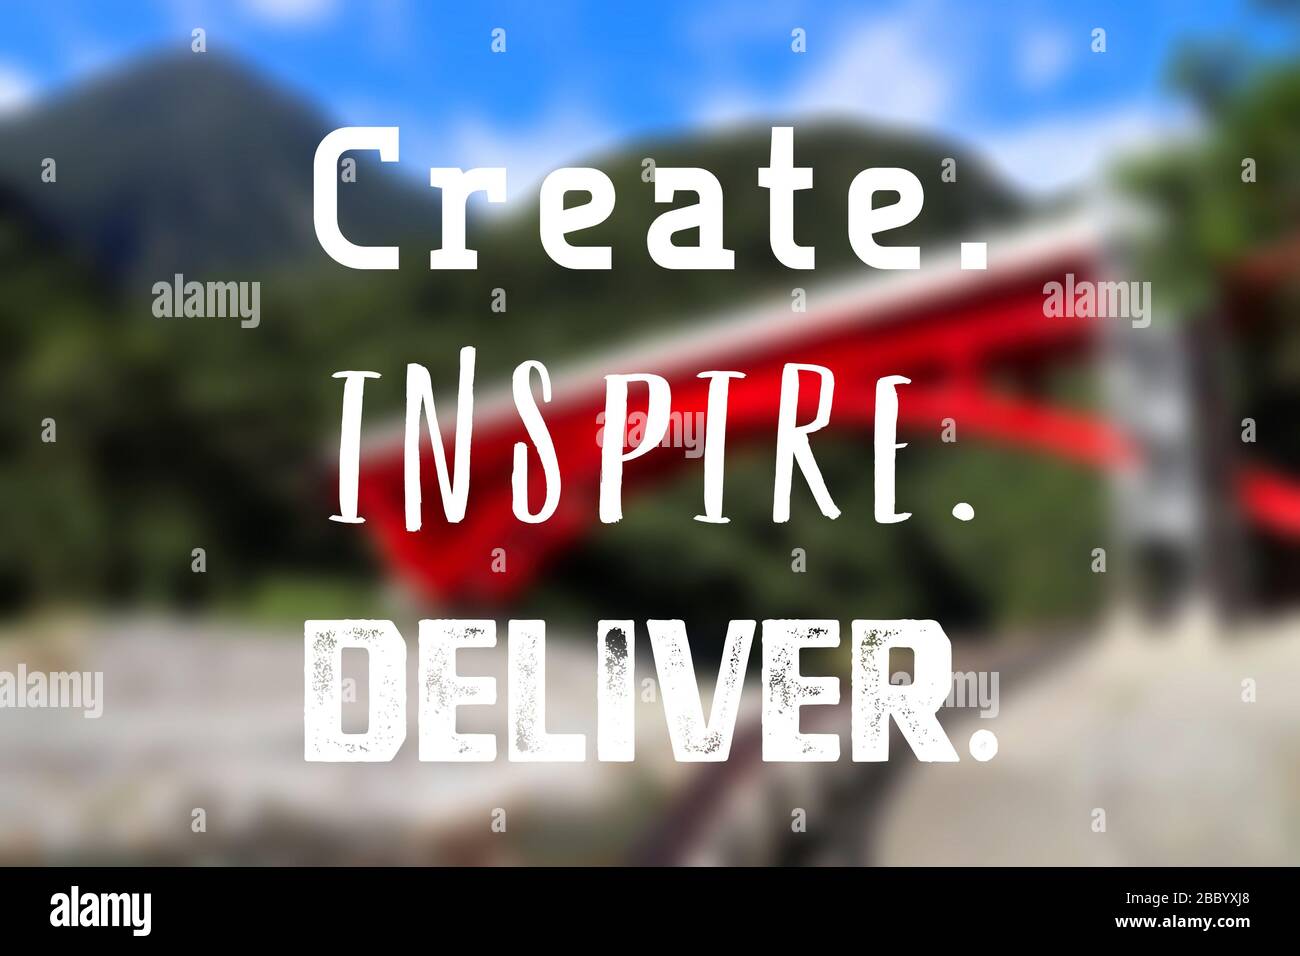 Kreieren, inspirieren, liefern. Poster zum inspirierenden Angebot am Arbeitsplatz. Zeichen der Erfolgsmotivation. Stockfoto